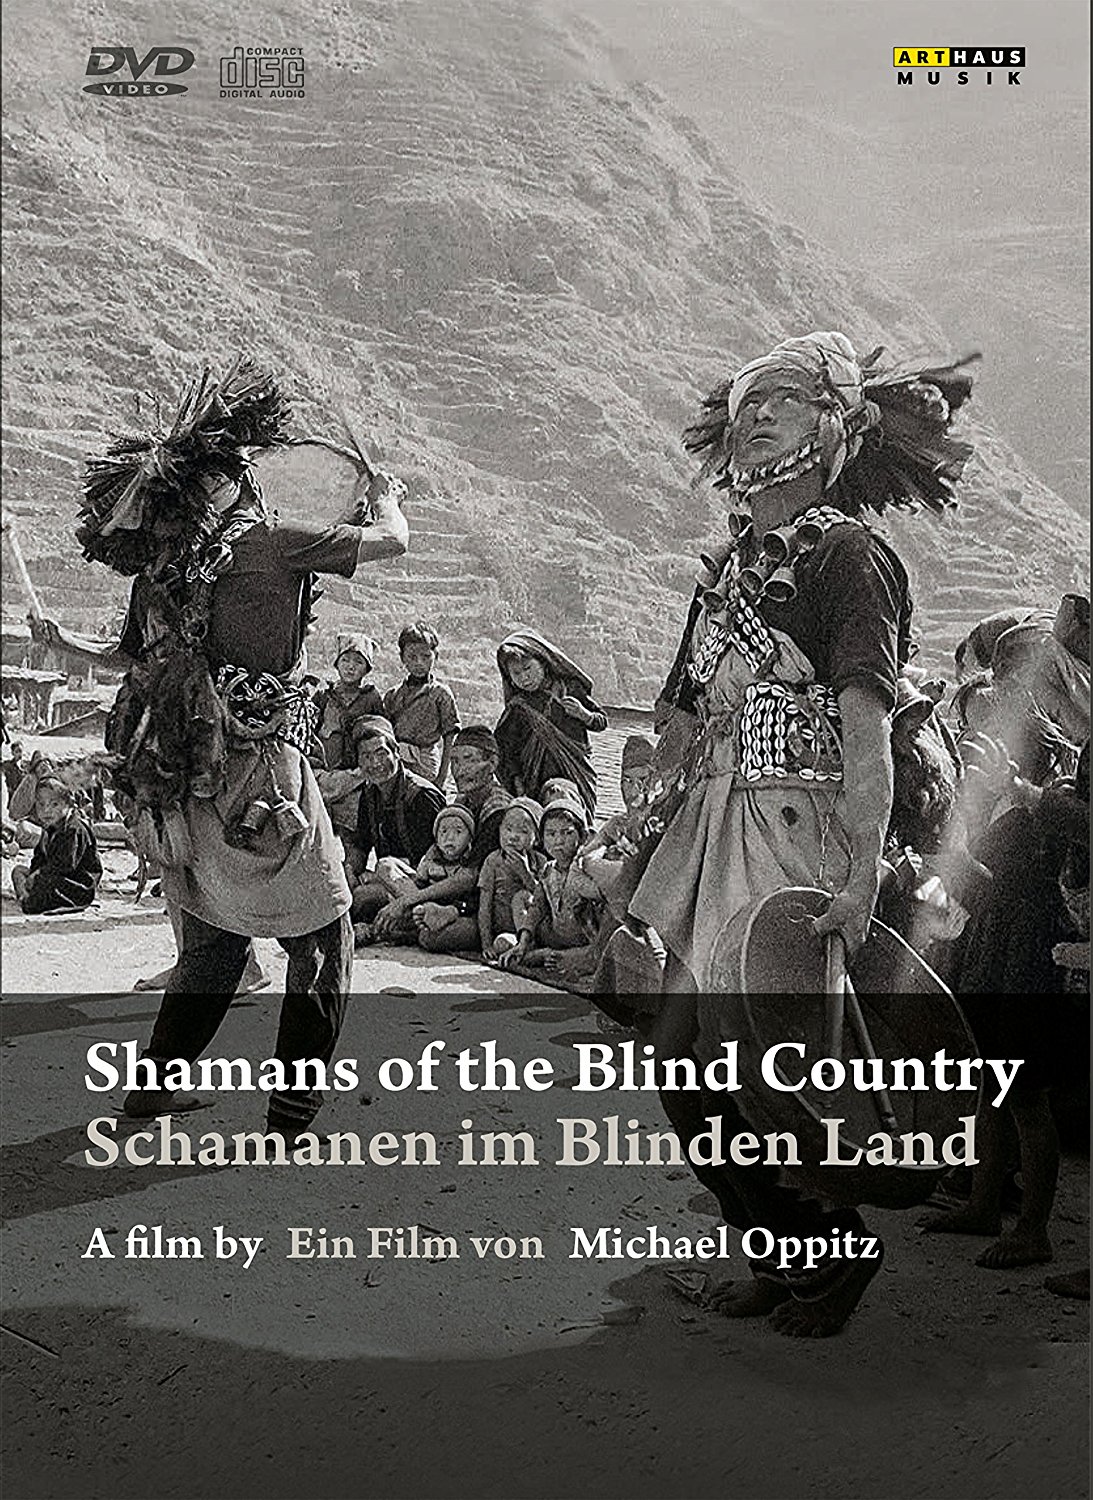 Dvd Shamans Of The Blind Country: A Film By Michael Oppitz (5 Dvd+2 Cd) NUOVO SIGILLATO, EDIZIONE DEL 21/04/2017 SUBITO DISPONIBILE